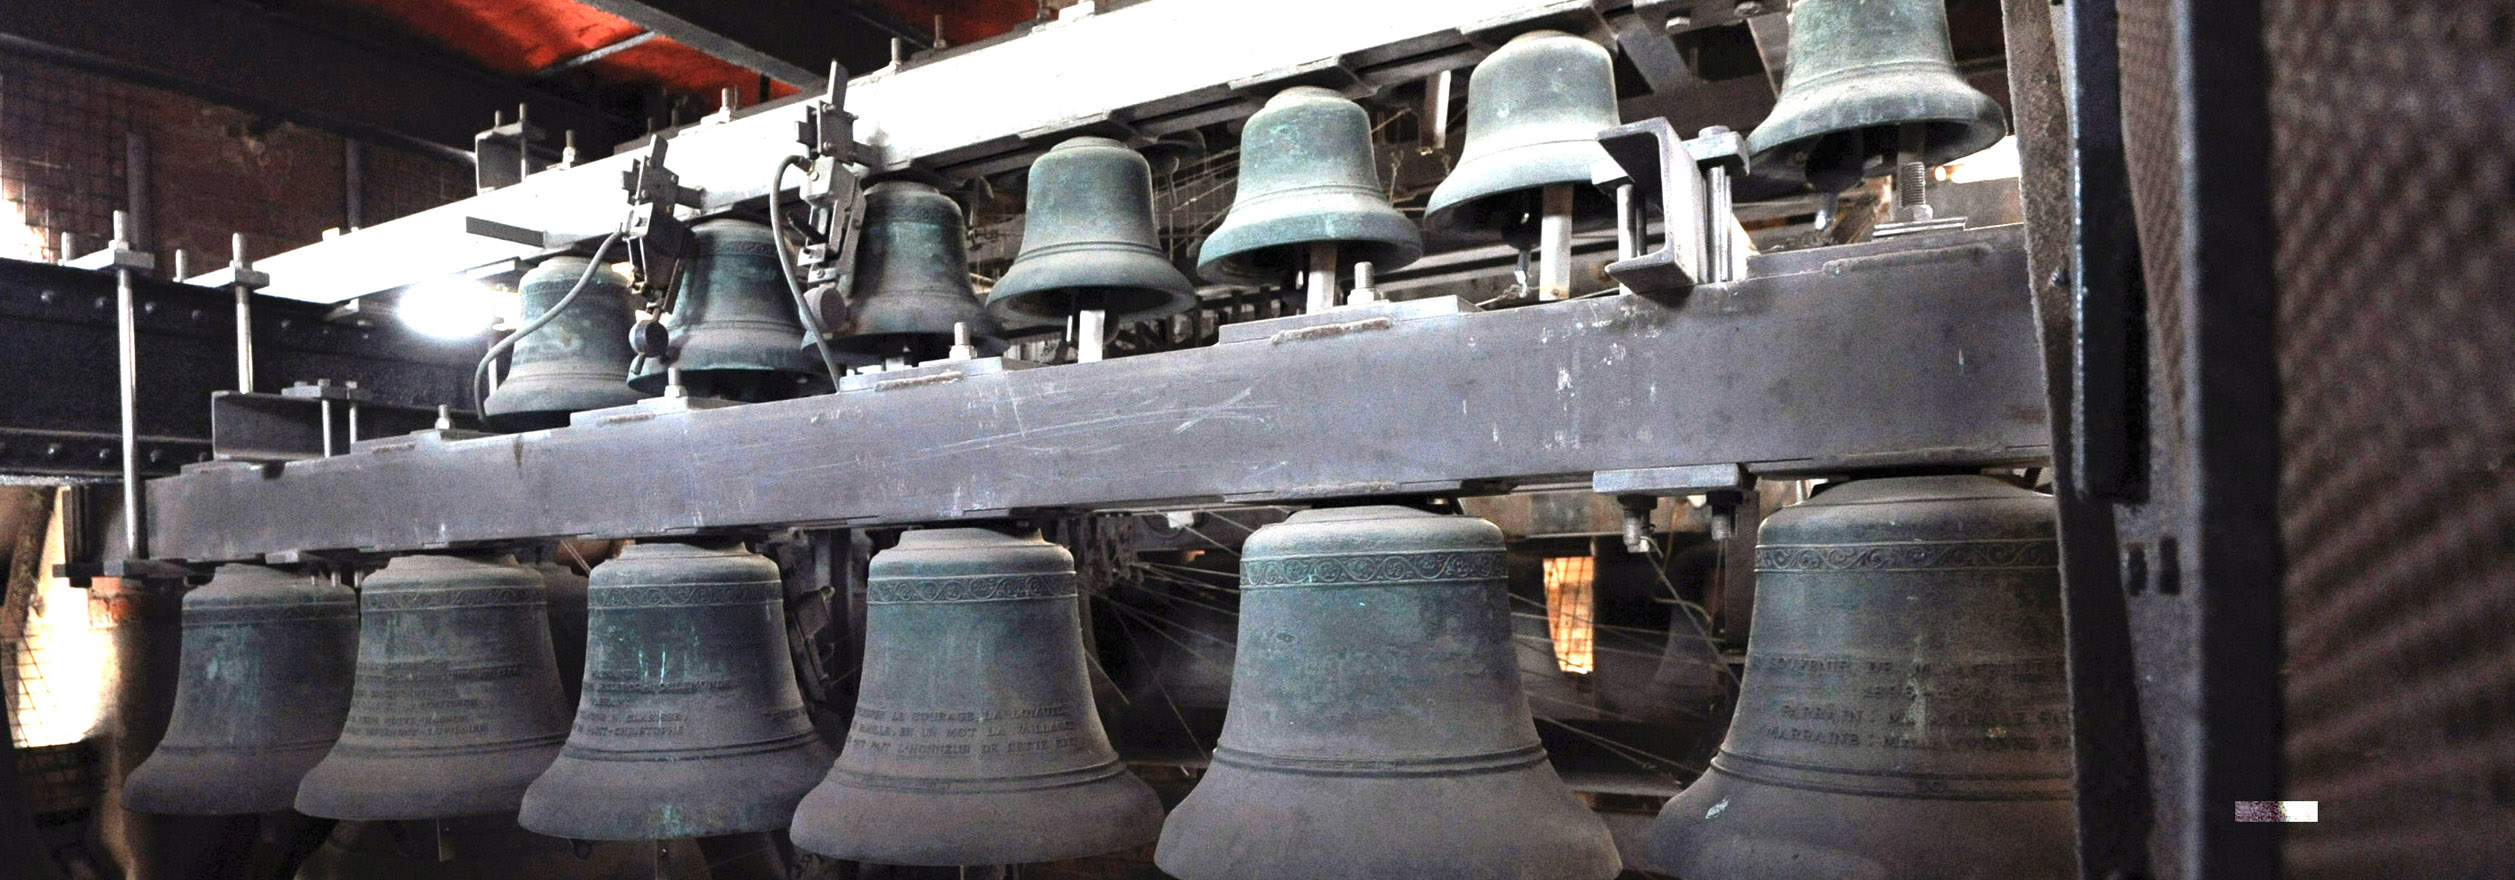 carillon